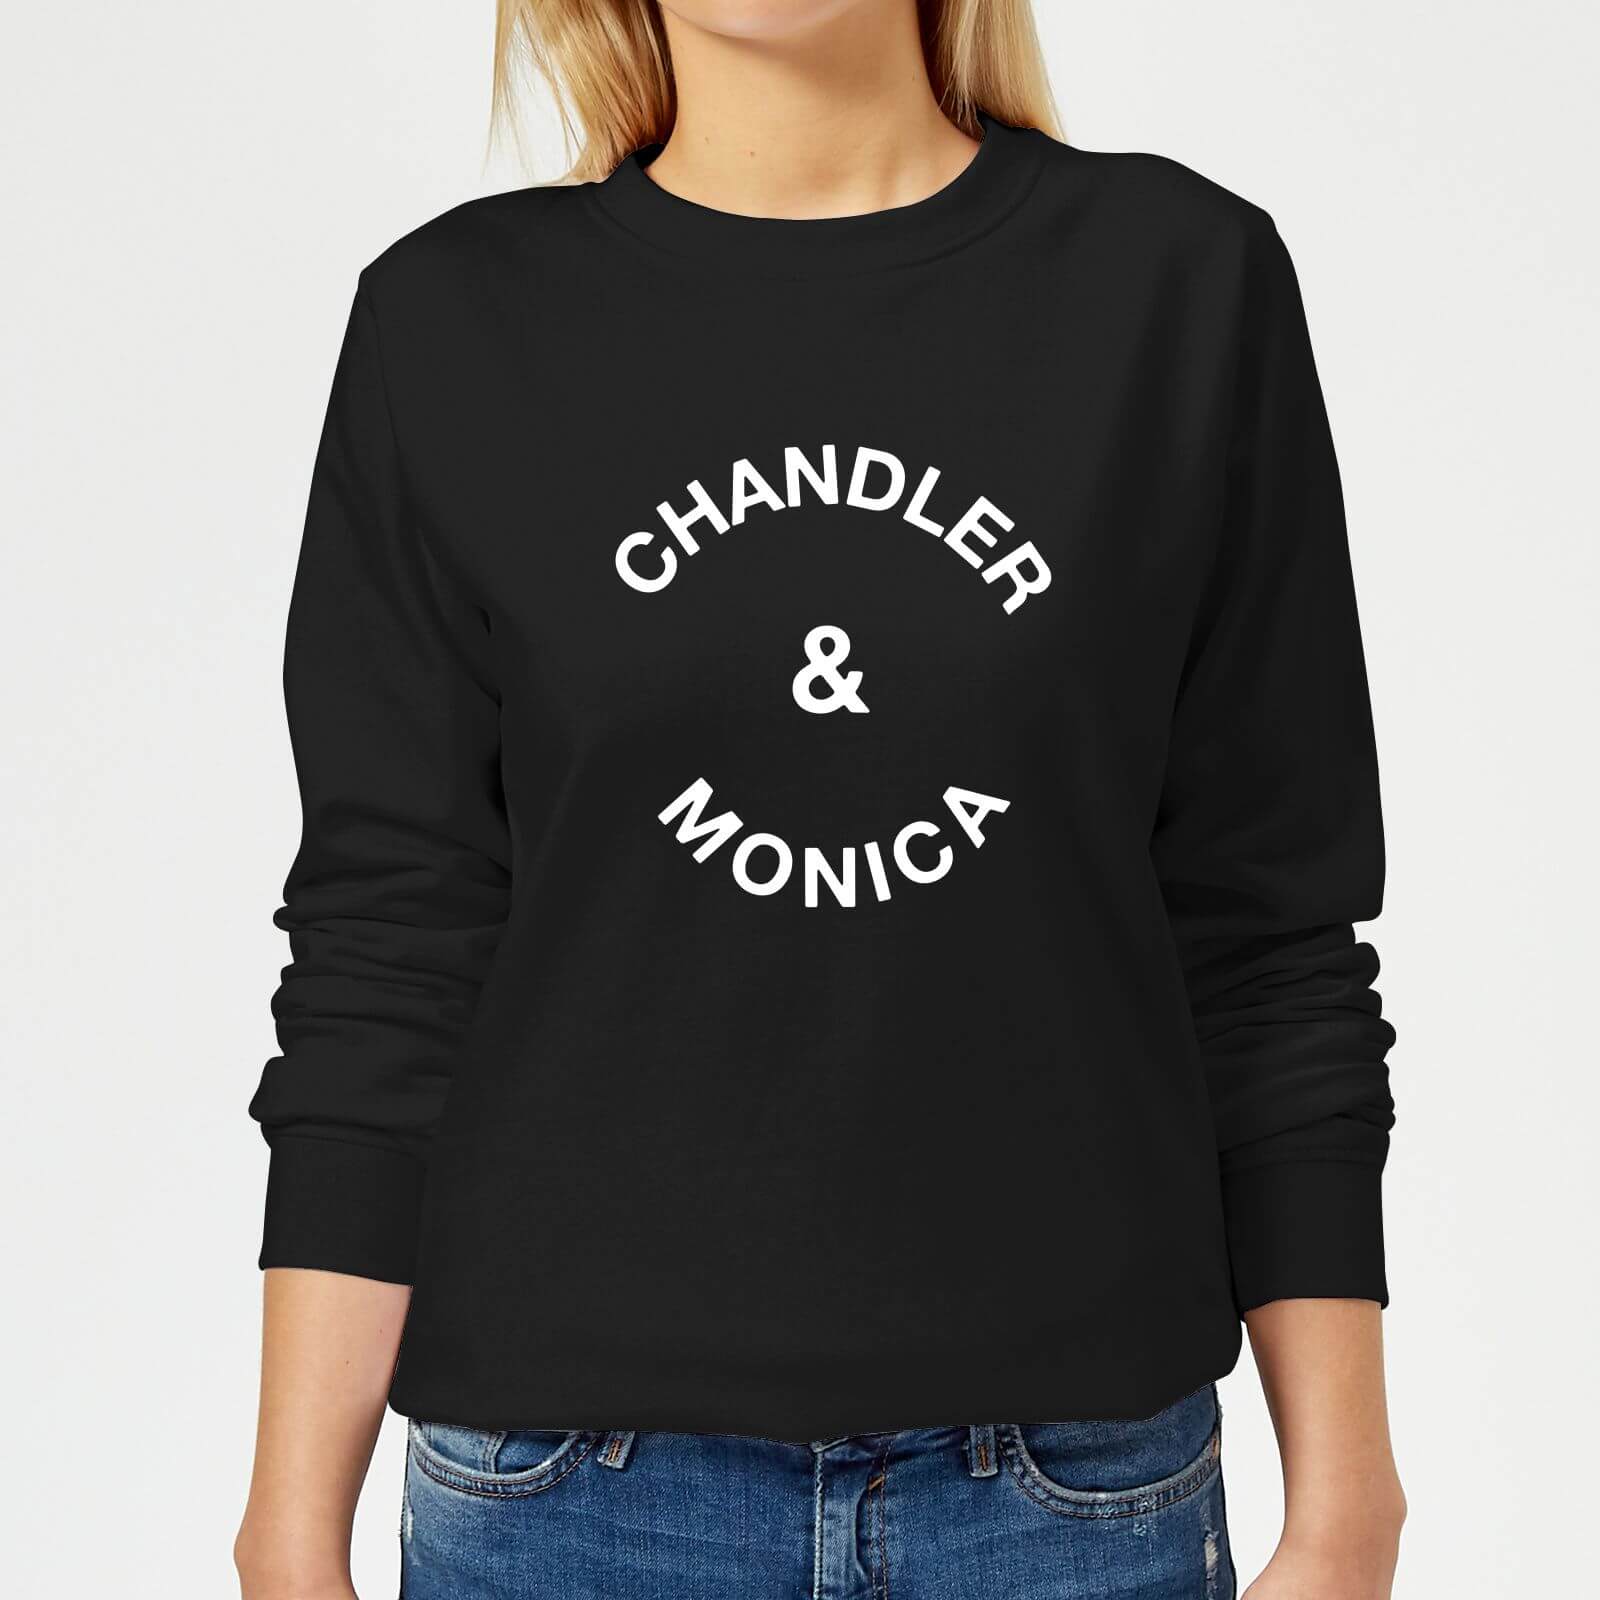 Chandler & Monica Women's Sweatshirt - Black - S - Black